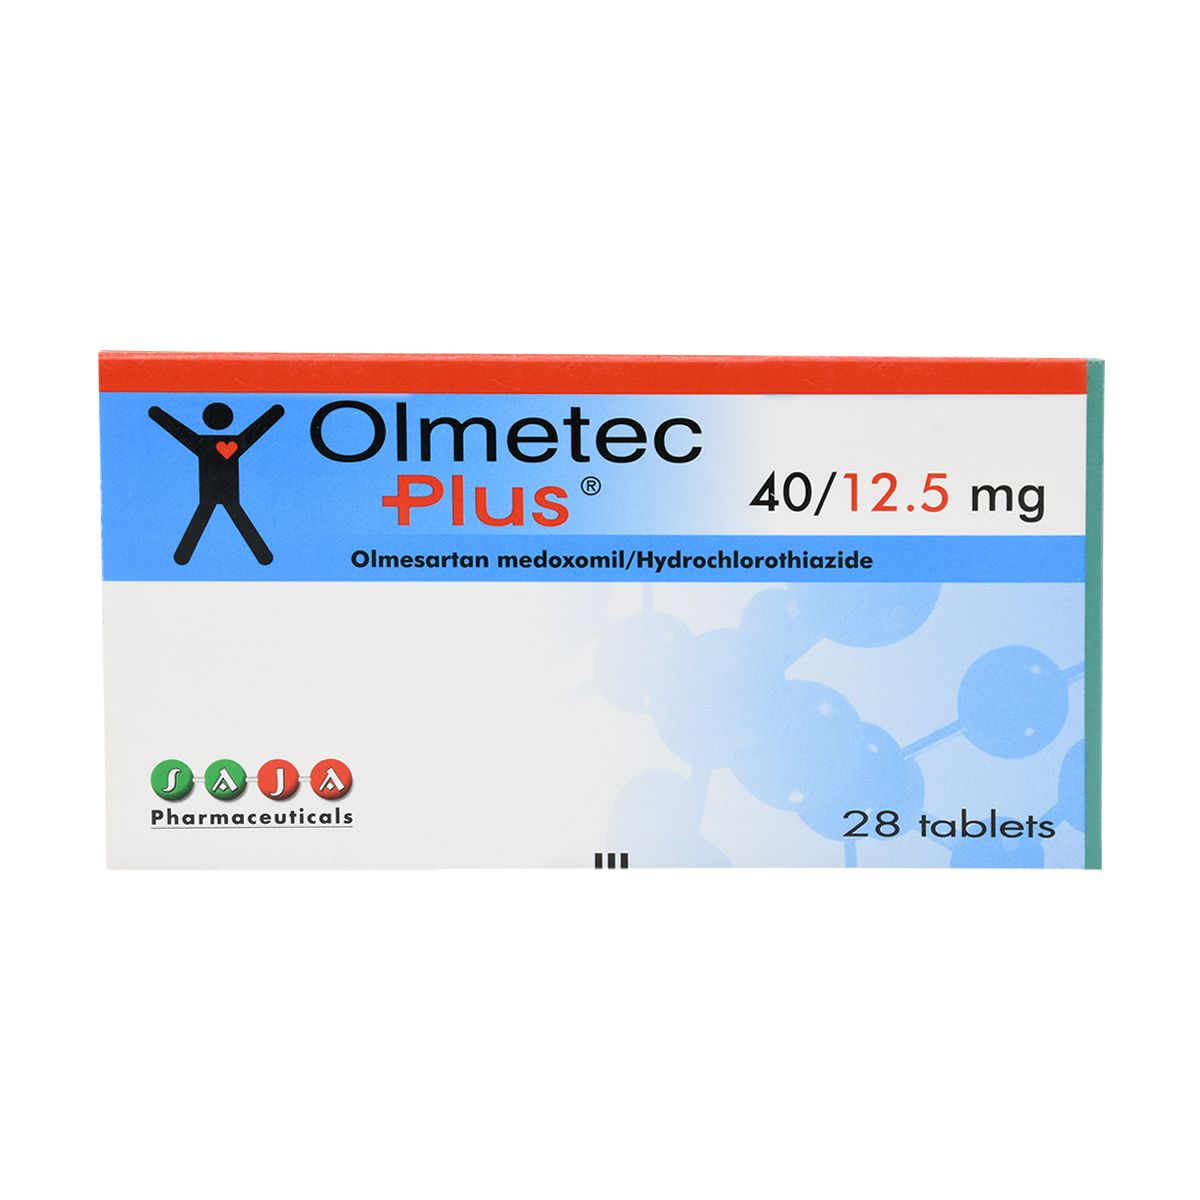 OLMETEC Olmetec Plus 40 mg/12.5 mg 28